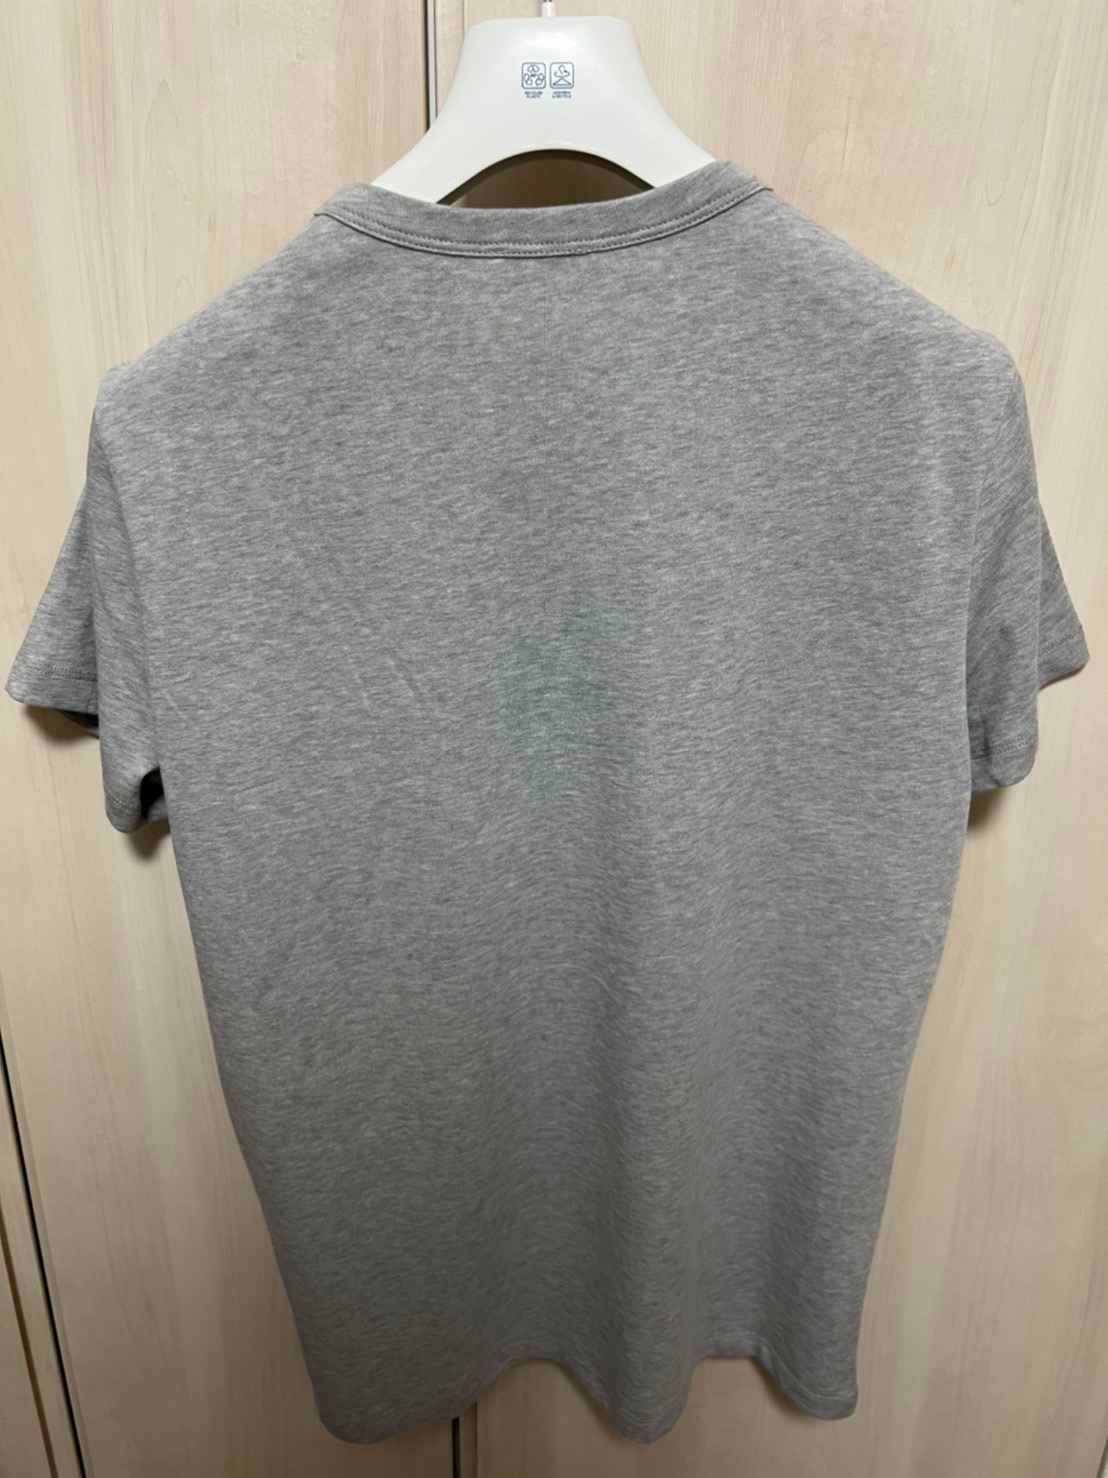 新品タグ付き☆MONCLER ダブルワッペンロゴ Tシャツ グレー色 Lサイズ